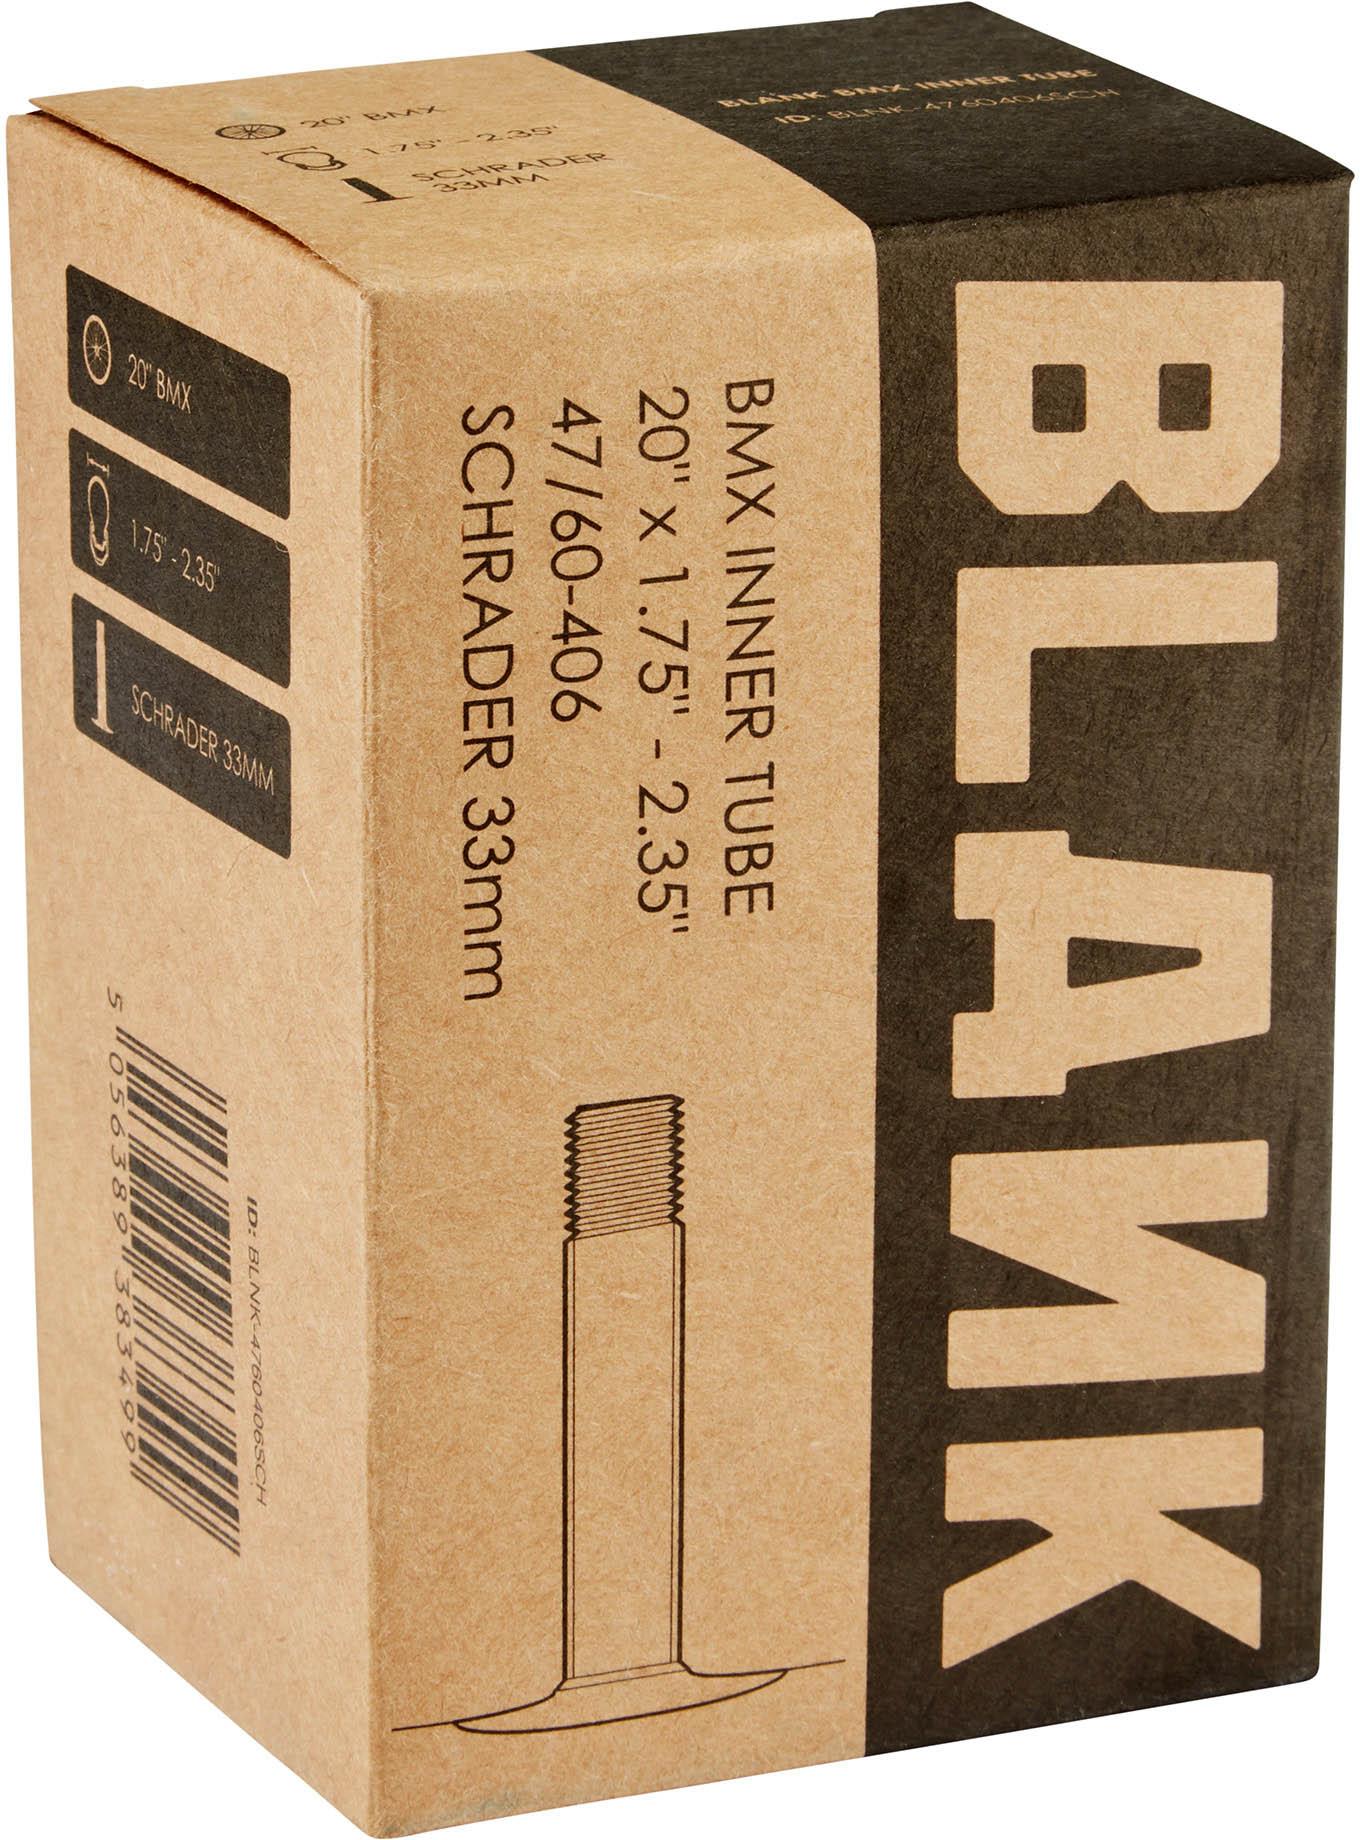 Blank 20 Bmx Inner Tube  Black